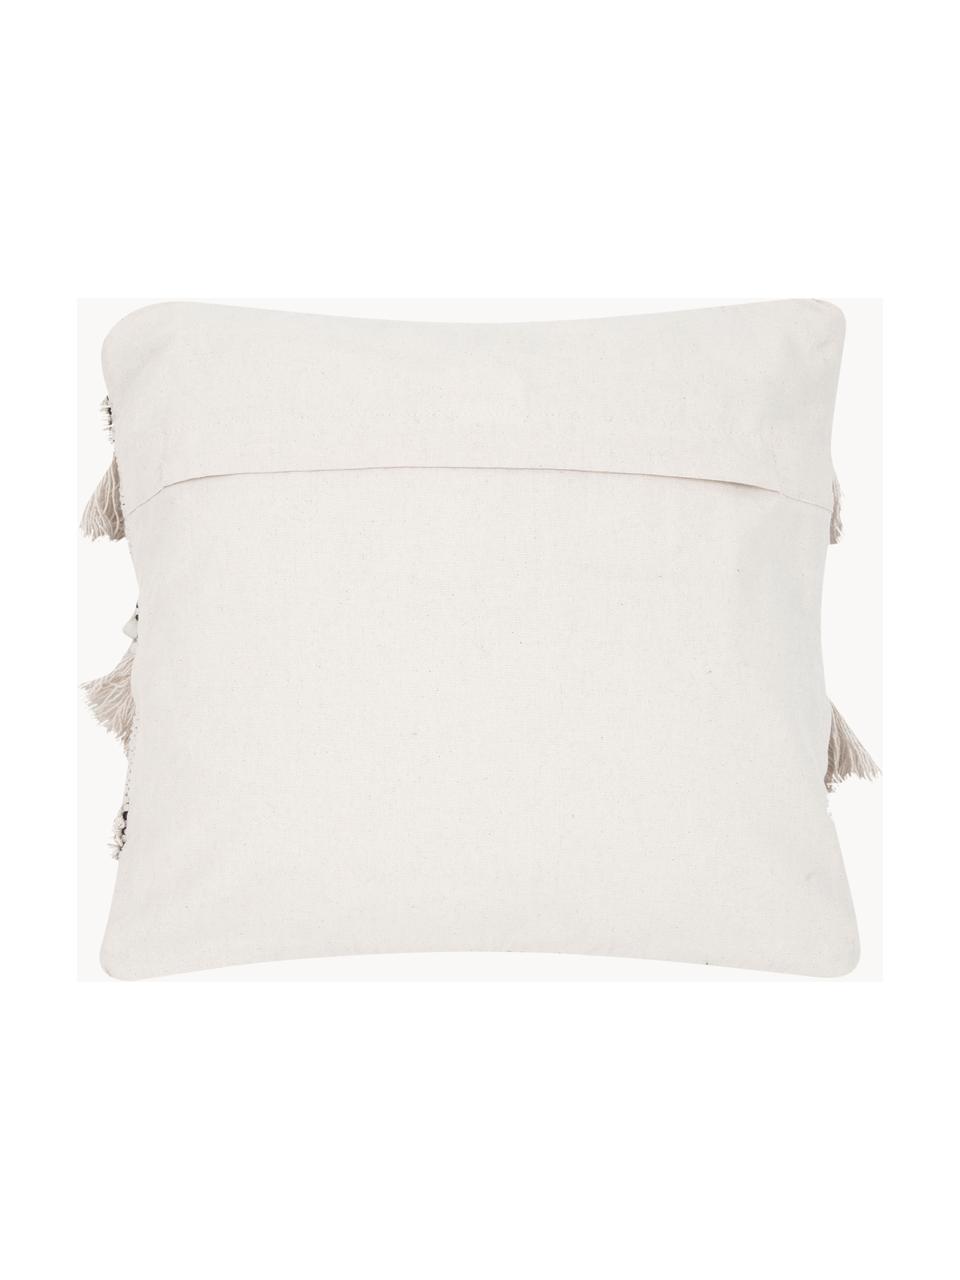 Poszewka na poduszkę w stylu boho Kele, 100% bawełna, Ecru, S 40 x D 40 cm